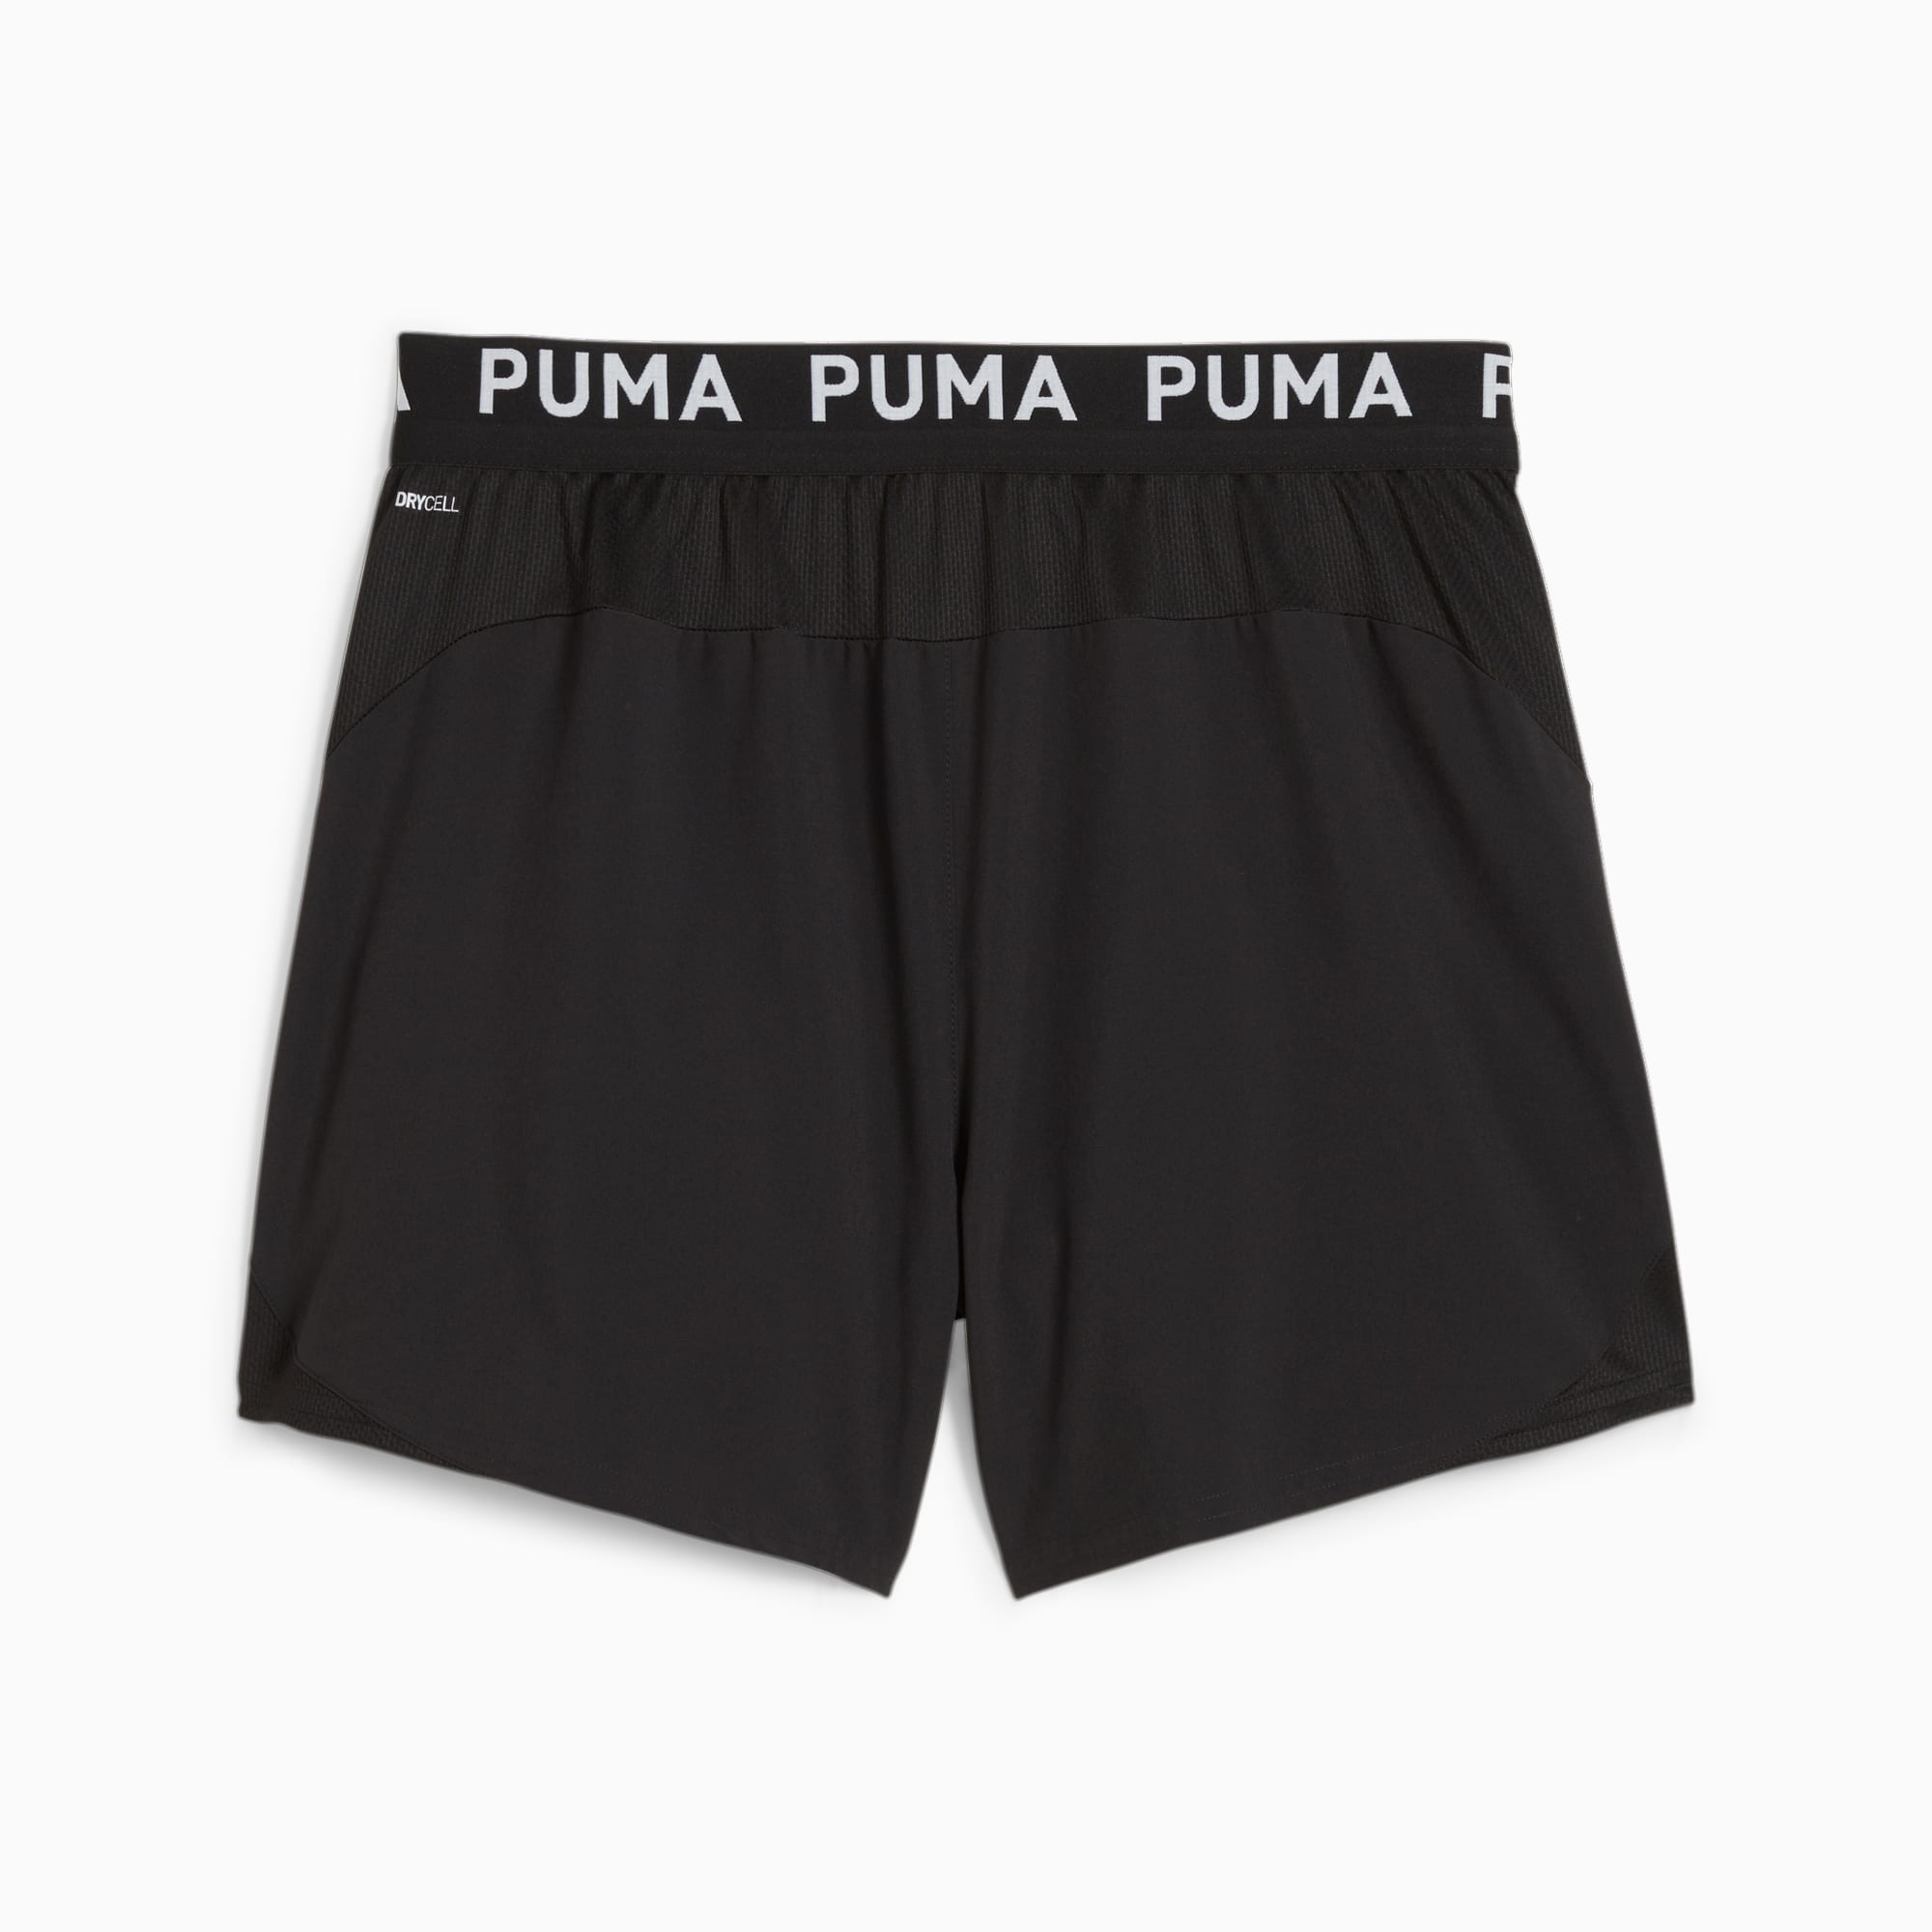 PUMA PUMA FIT 5 Ultrabreathe Stretch Short Heren Sportbroek - Puma Black